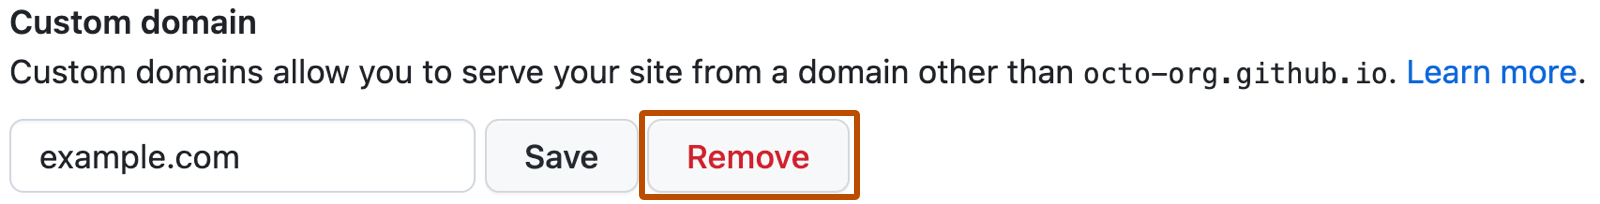 GitHub Pages のカスタム ドメインを保存または削除する設定ボックスのスクリーンショット。 "example.com" というテキスト ボックスの右に、赤い文字で [削除] というラベルの付いたボタンがあります。